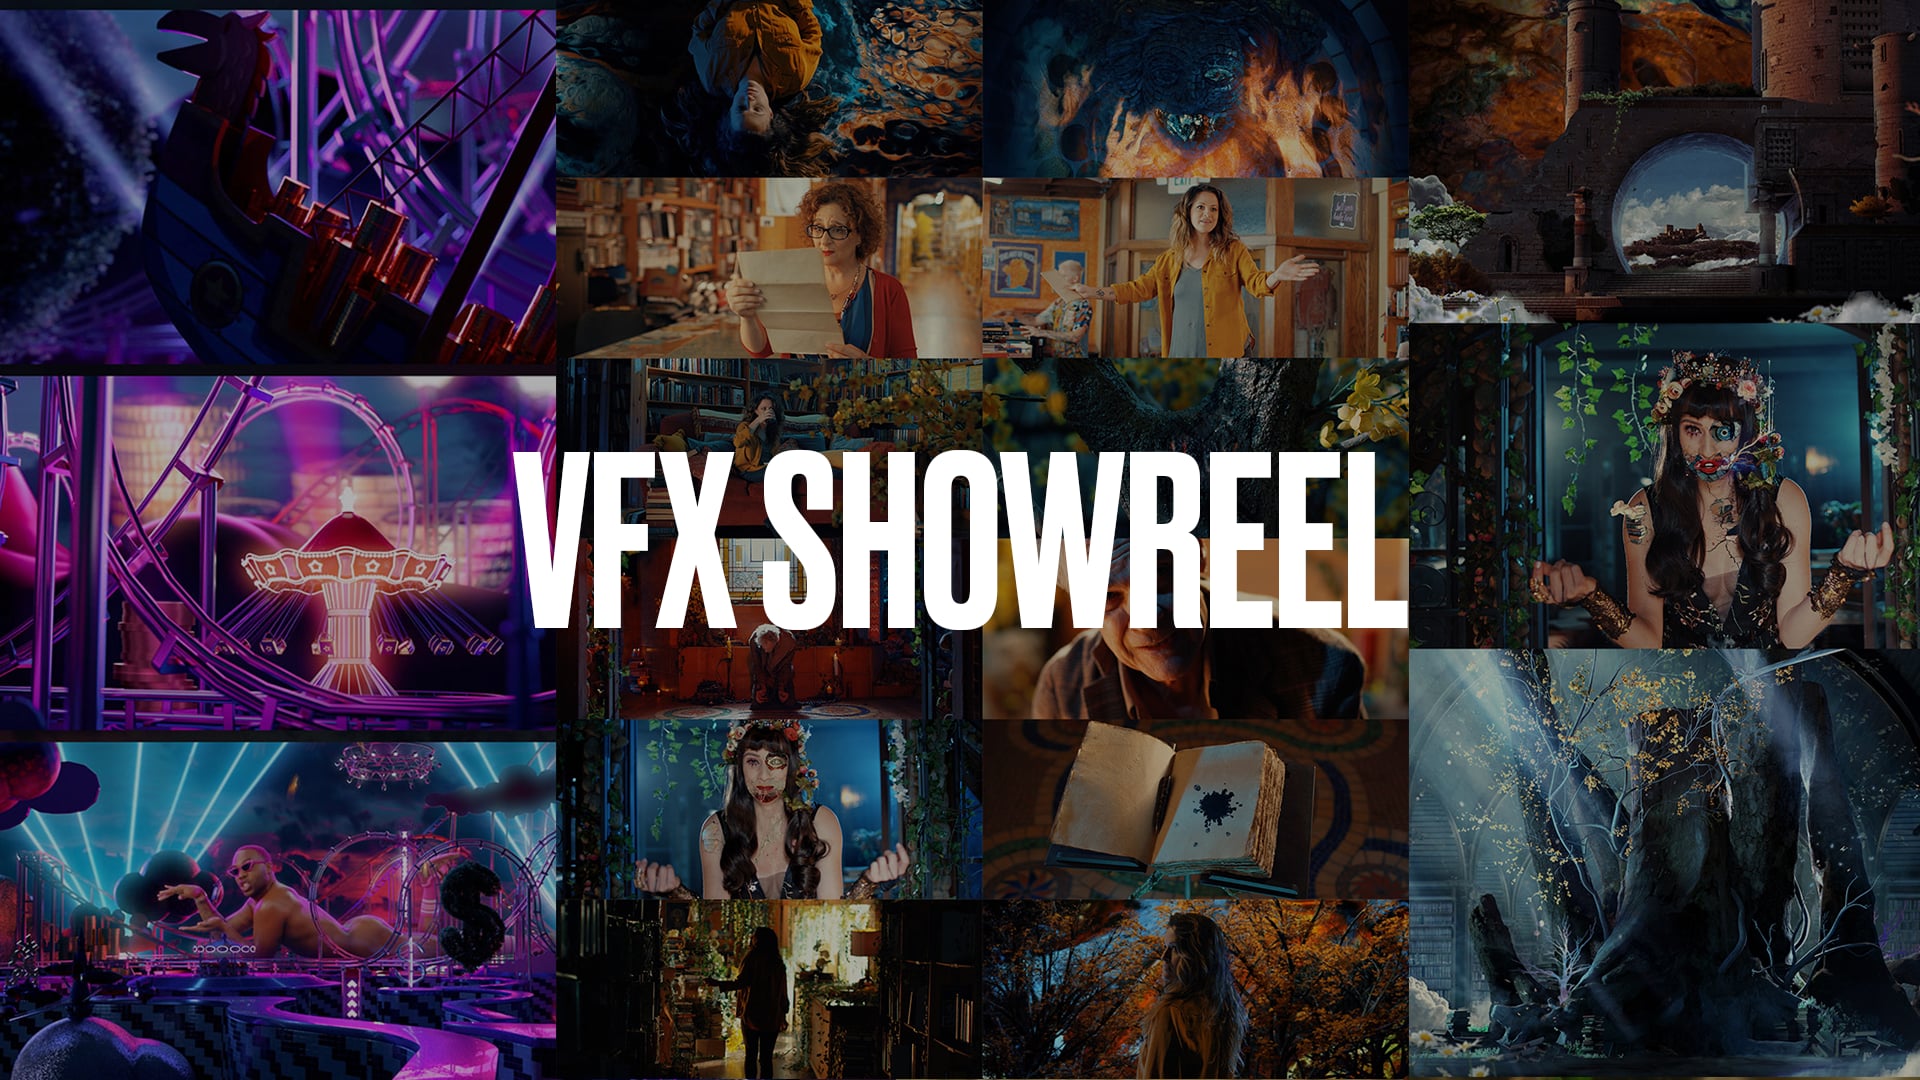 VFX Showreel